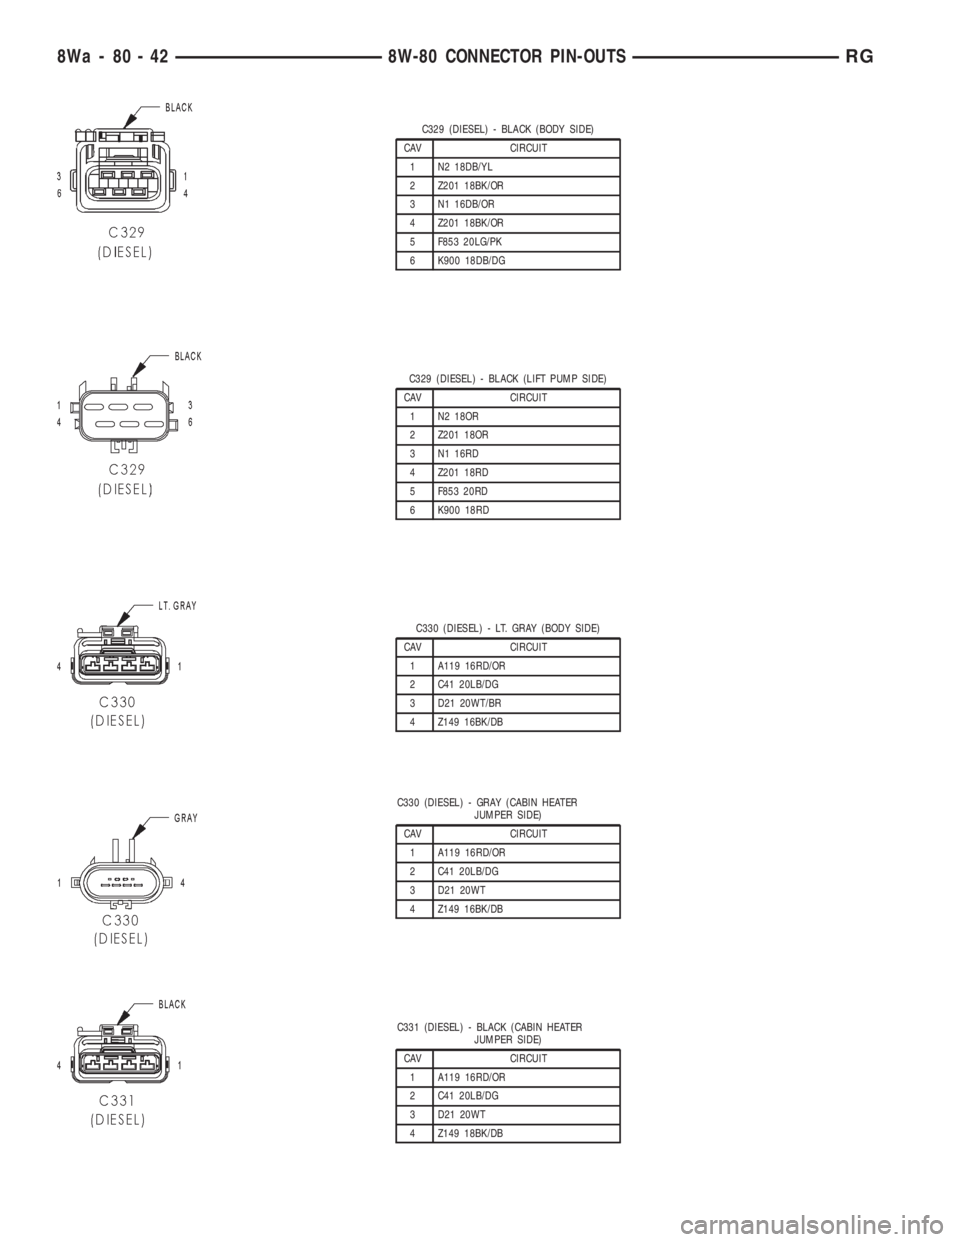 CHRYSLER VOYAGER 2001  Service Manual C329 (DIESEL) - BLACK (BODY SIDE)
CAV CIRCUIT
1 N2 18DB/YL
2 Z201 18BK/OR
3 N1 16DB/OR
4 Z201 18BK/OR
5 F853 20LG/PK
6 K900 18DB/DG
C329 (DIESEL) - BLACK (LIFT PUMP SIDE)
CAV CIRCUIT
1 N2 18OR
2 Z201 